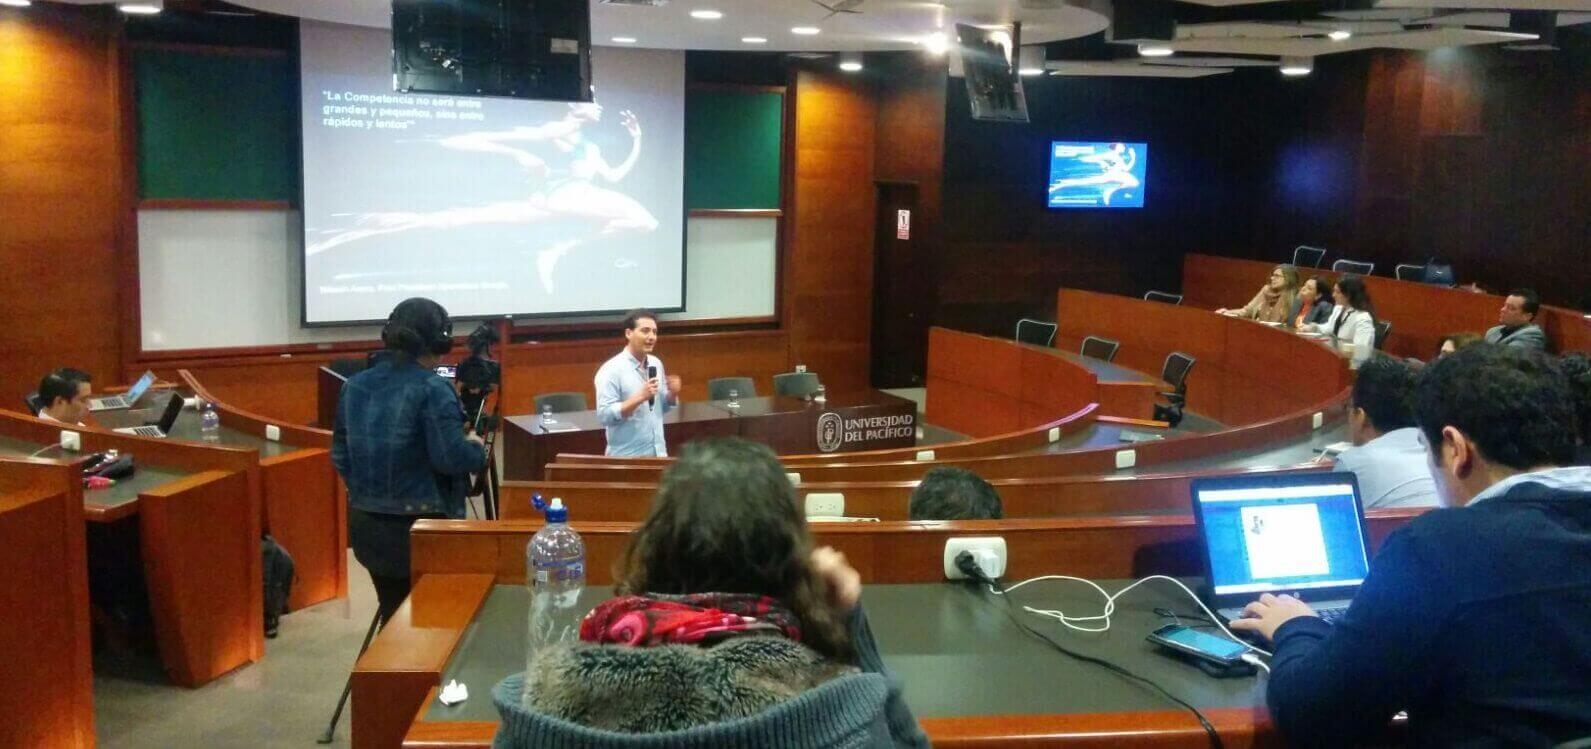 Mentalidad Web participó en Conferencia Internacional de Transformación Digital y Analytics en Perú